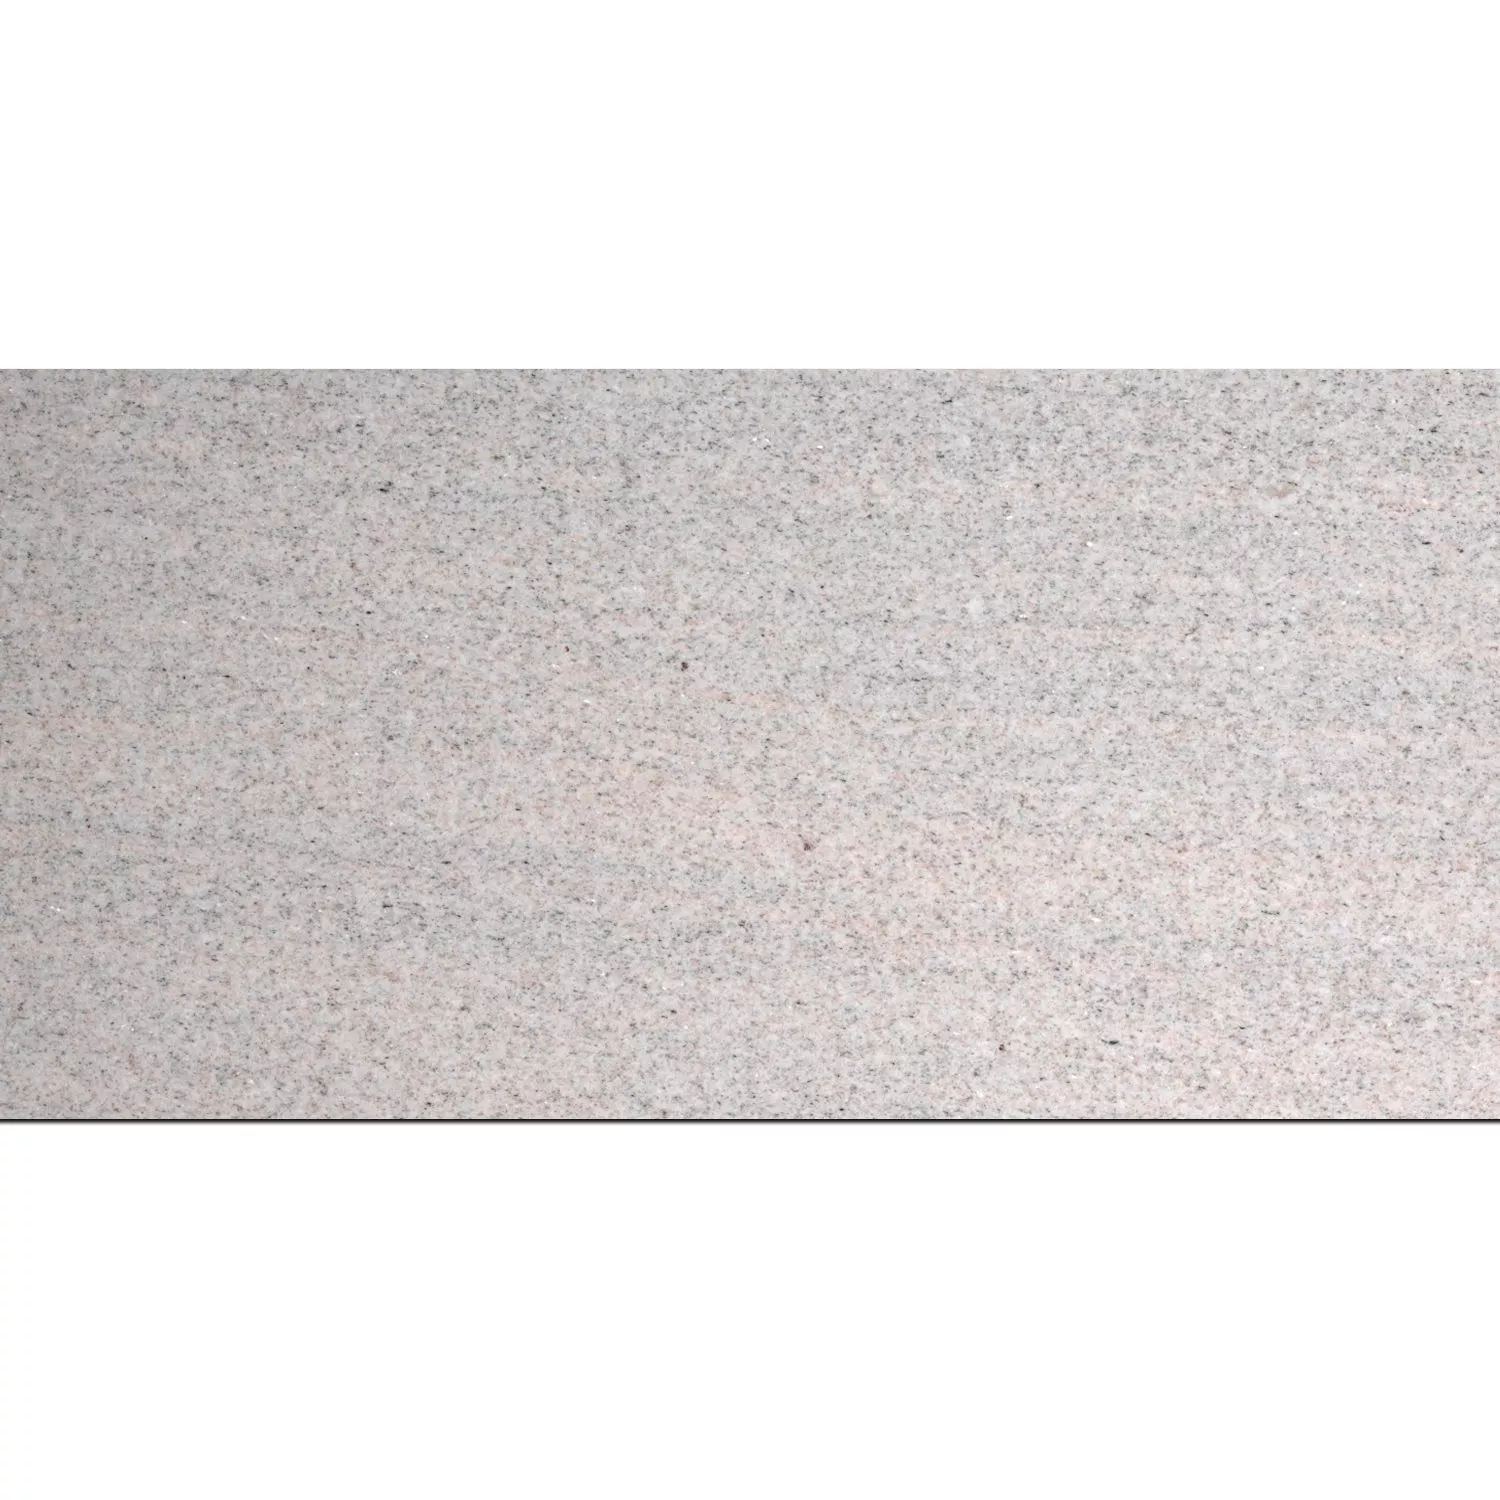 Pietra Naturale Piastrella Granito Imperial White Lucidato 30,5x61cm